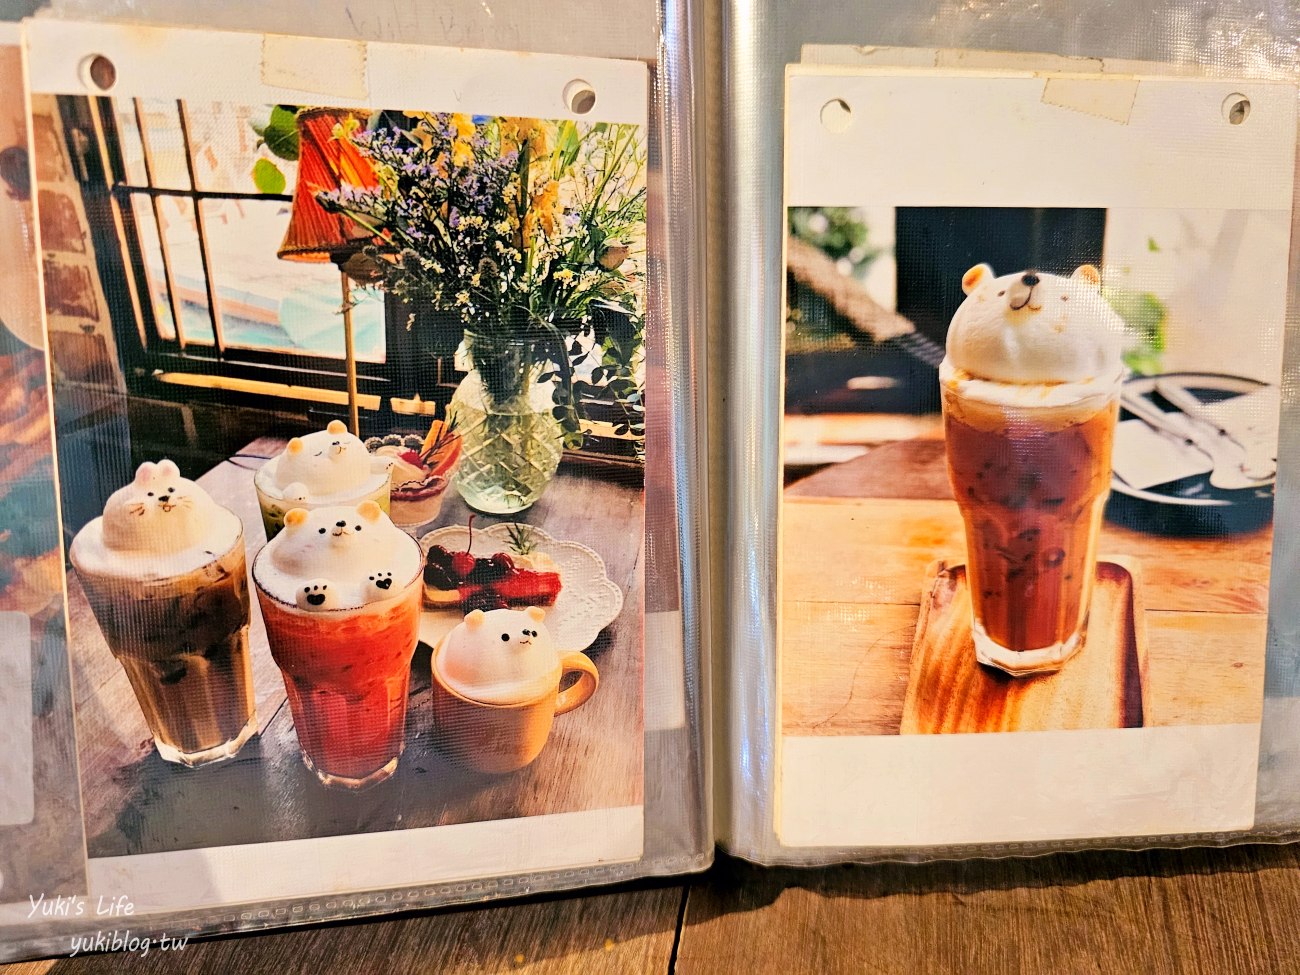 泰國曼谷網美咖啡廳》B-STORY Cafe 鄉村風格~熊熊立體奶泡咖啡~水果茶也可以！ - yukiblog.tw